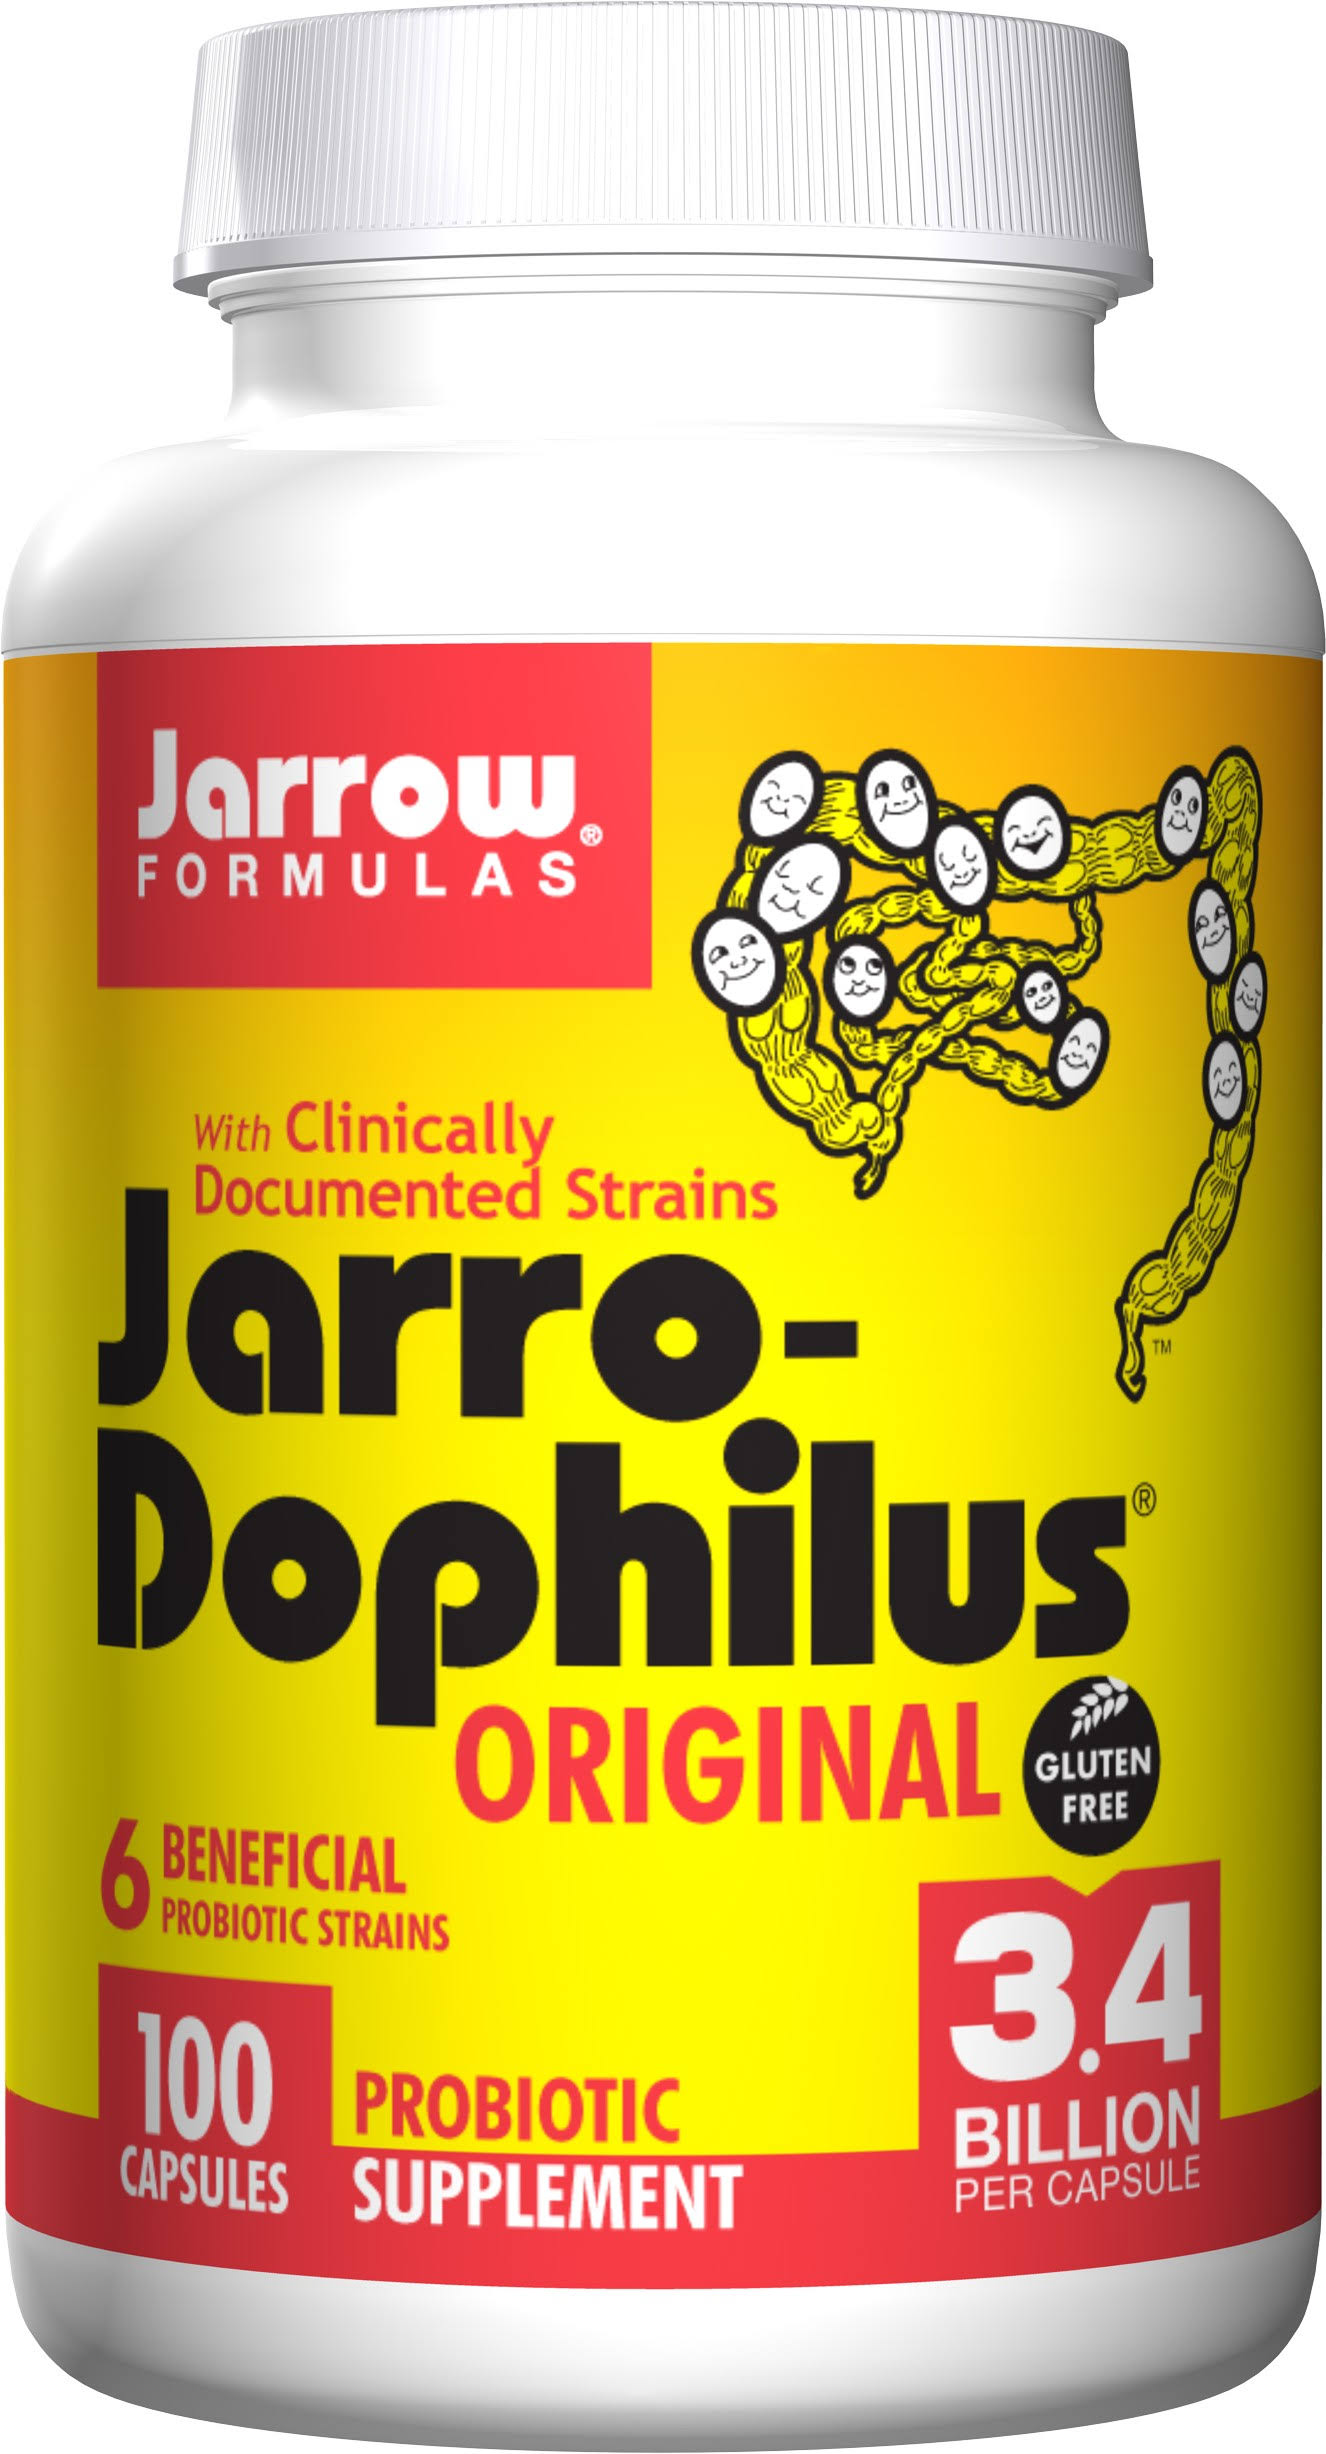 Jarrow Formulas Jarro-Dophilus Original Supplement - 100 Capsules